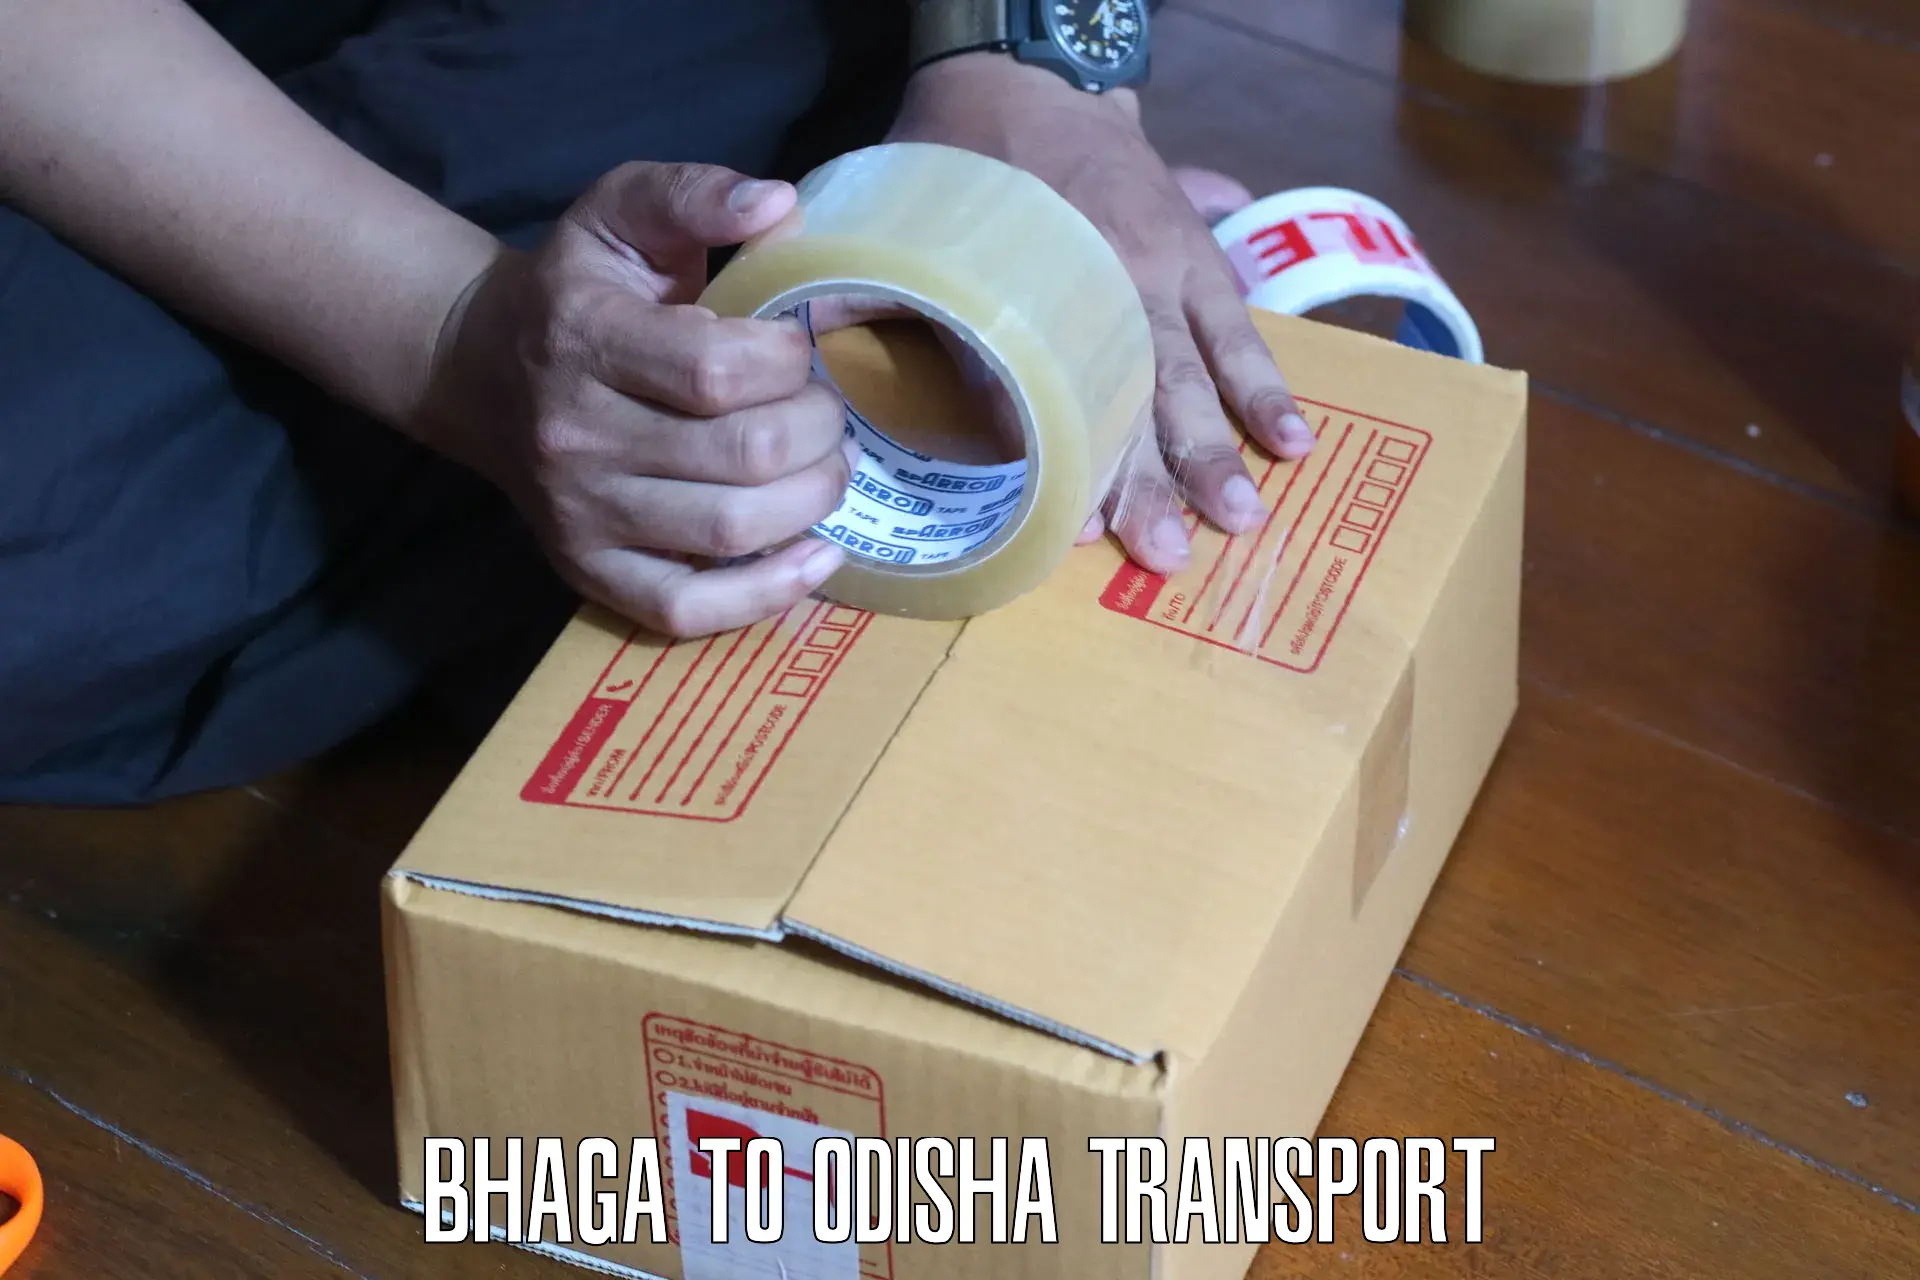 Daily transport service Bhaga to Kupari